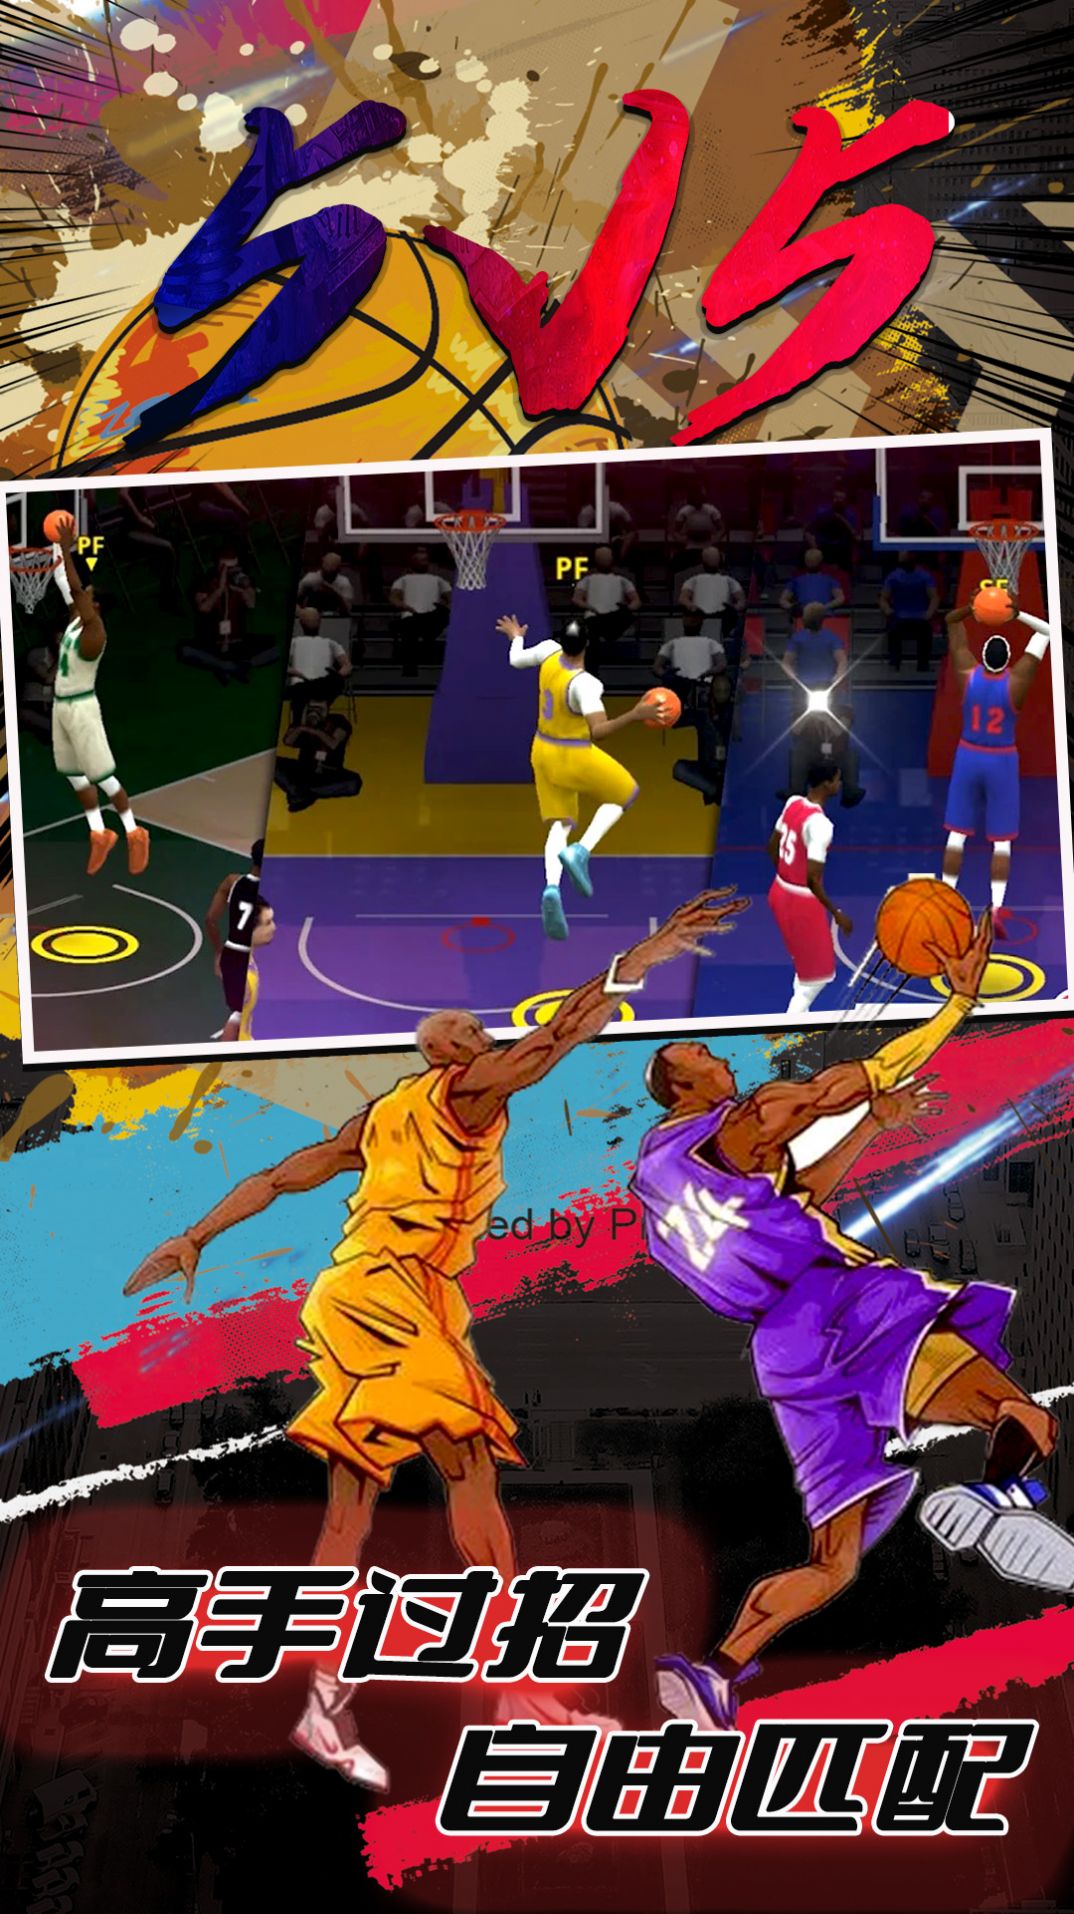 街头篮球5V5模式游戏补丁包下载